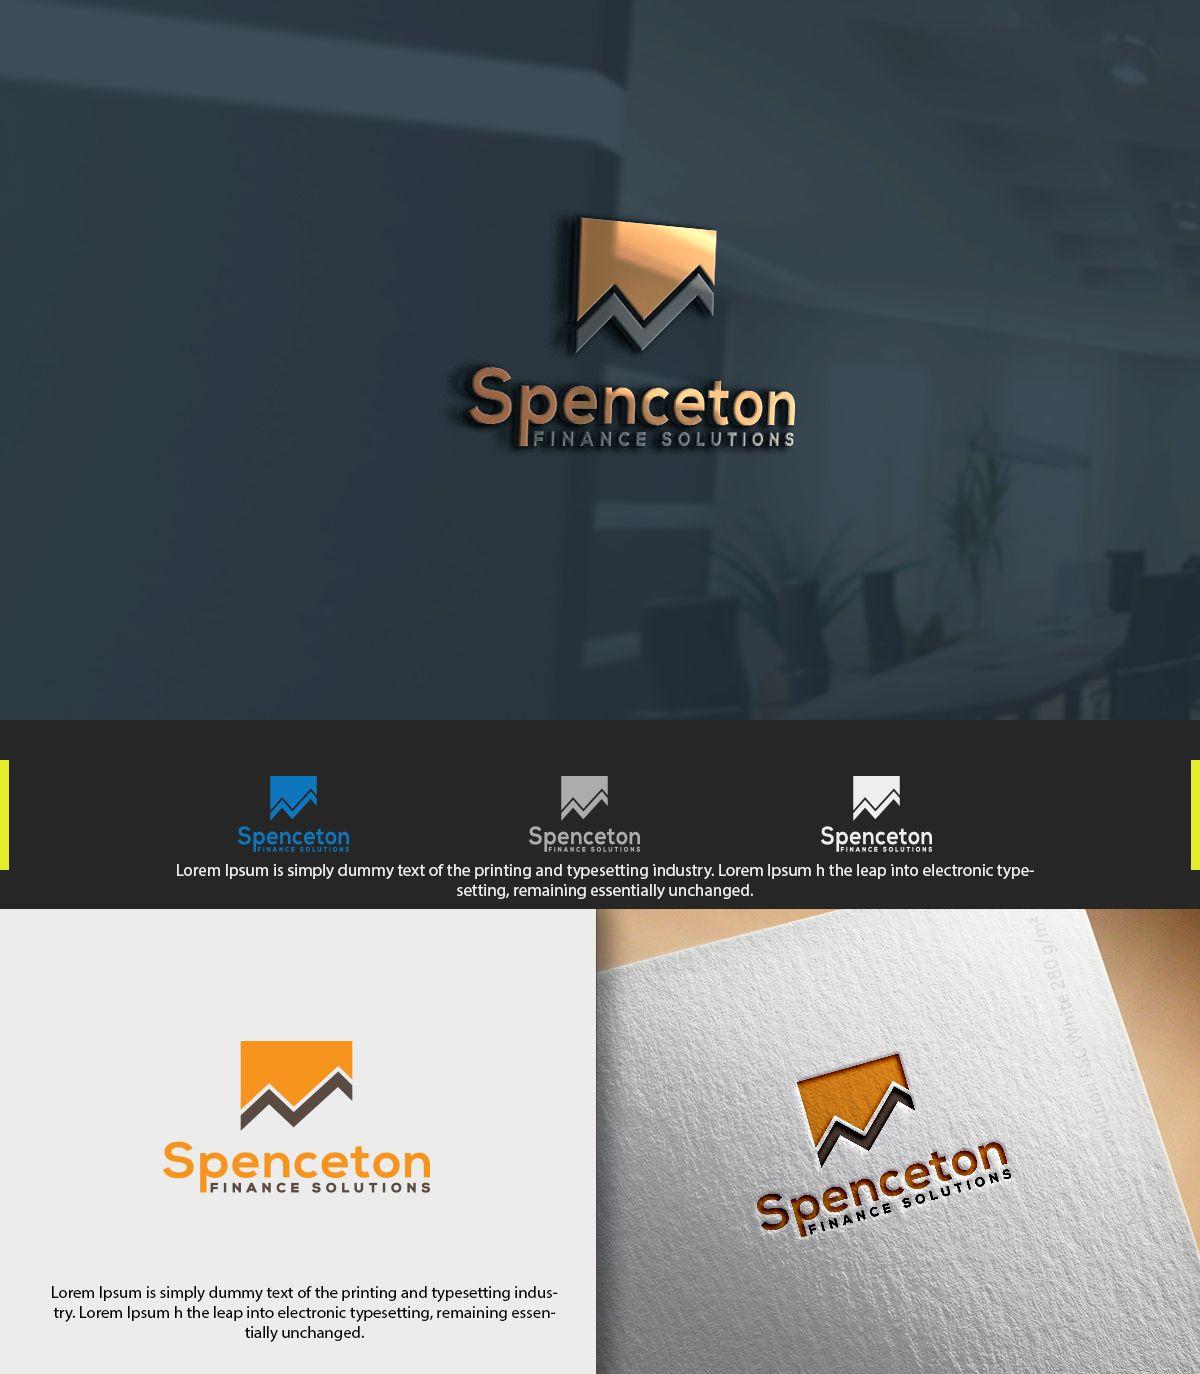 Zu Small Logo - Logo Design for Spenceton Finance Solutions by artmarque 2 | Design ...